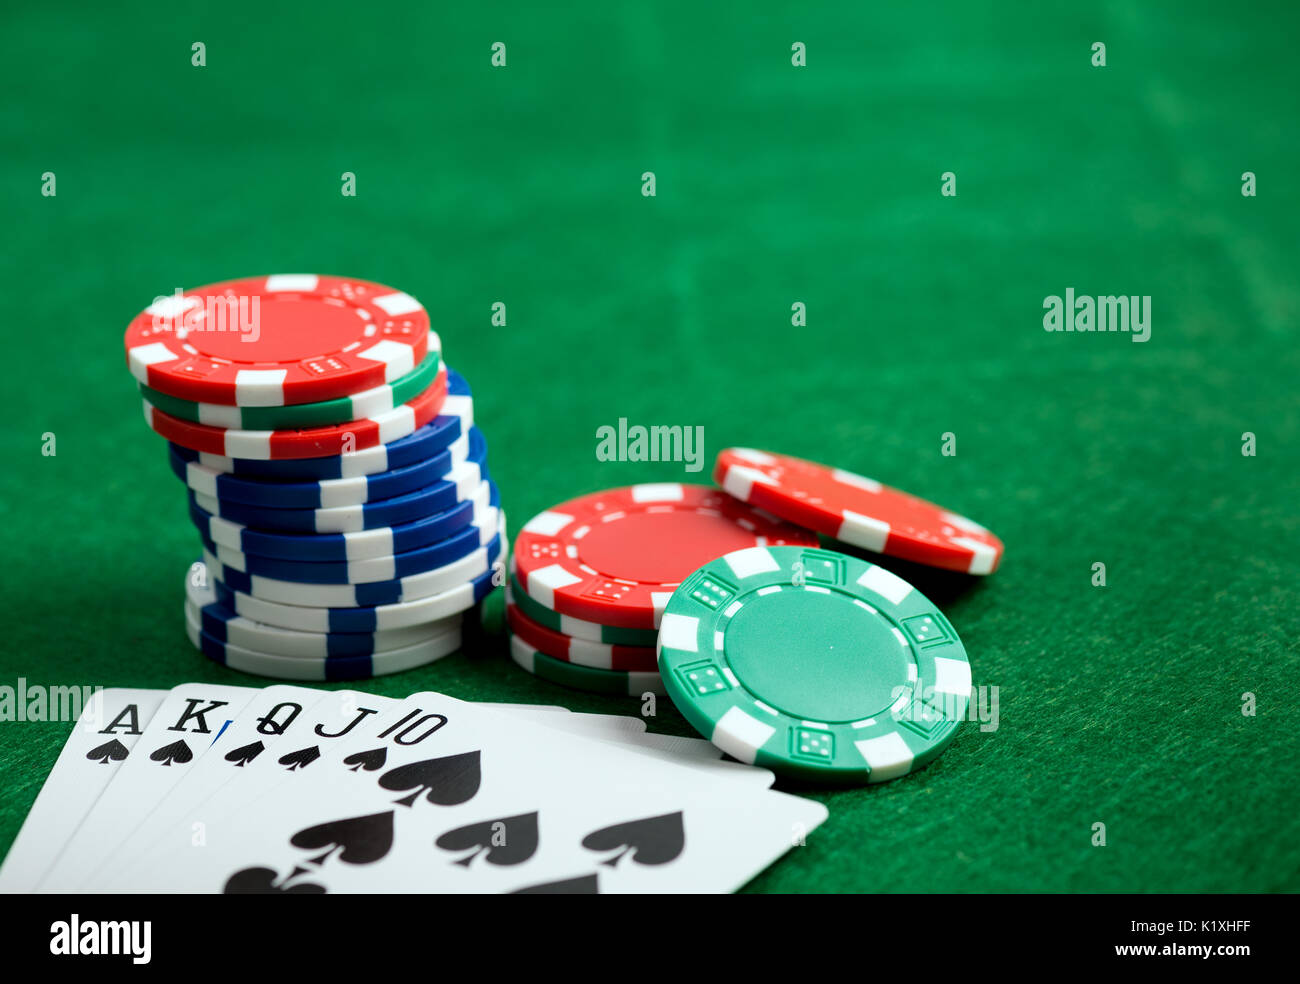 Casino grünen Tisch mit Chips und Royal Flush der Karten. Poker spiel Konzept Stockfoto